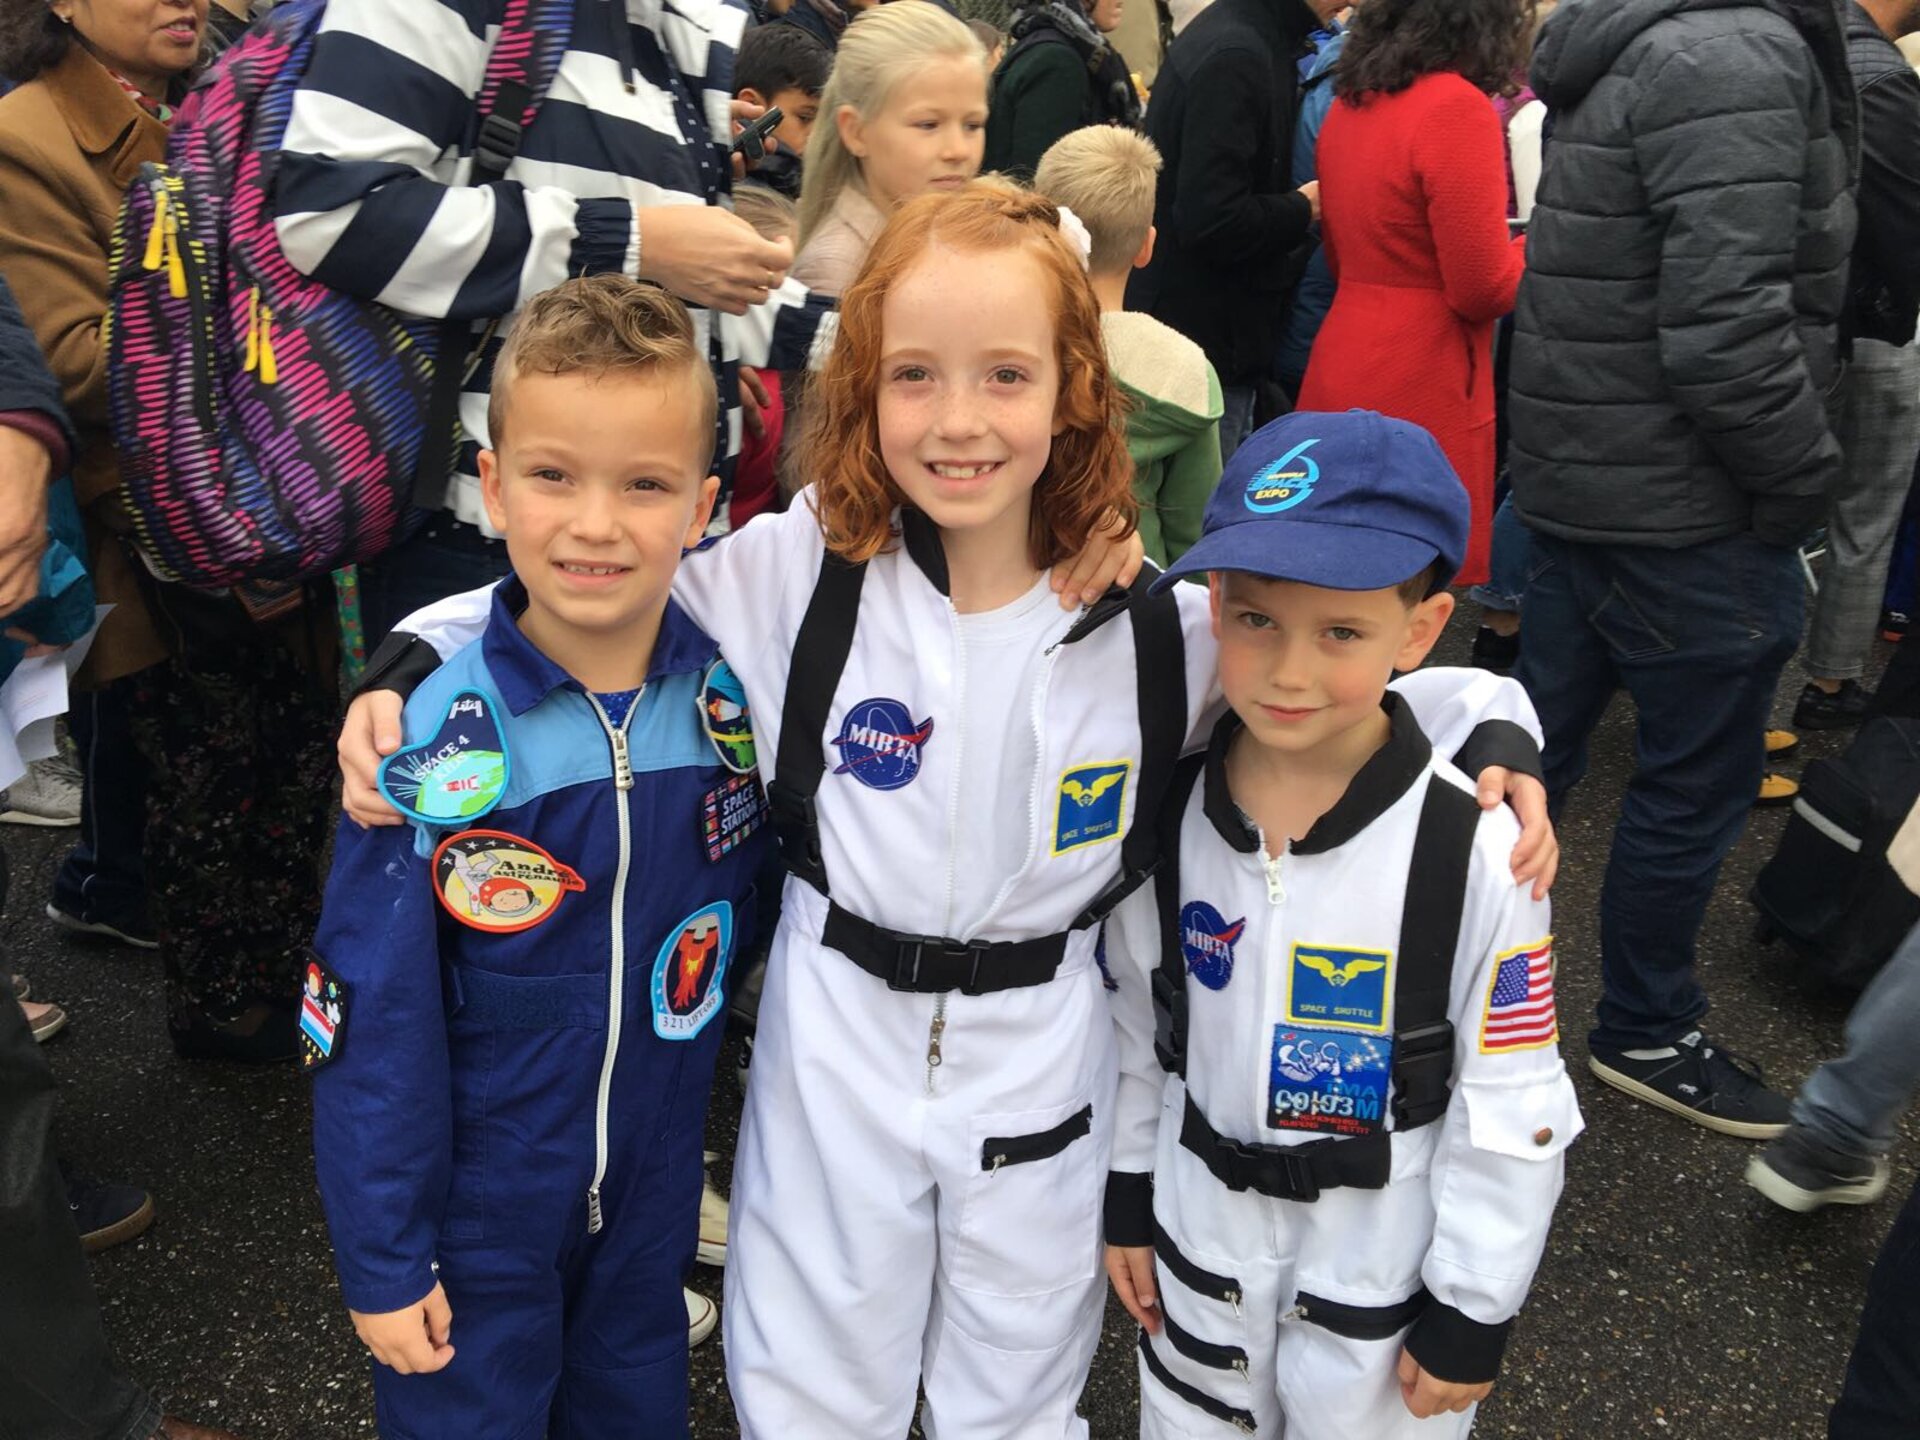 ESA open dag: deze jonge astronautjes hadden er zin in